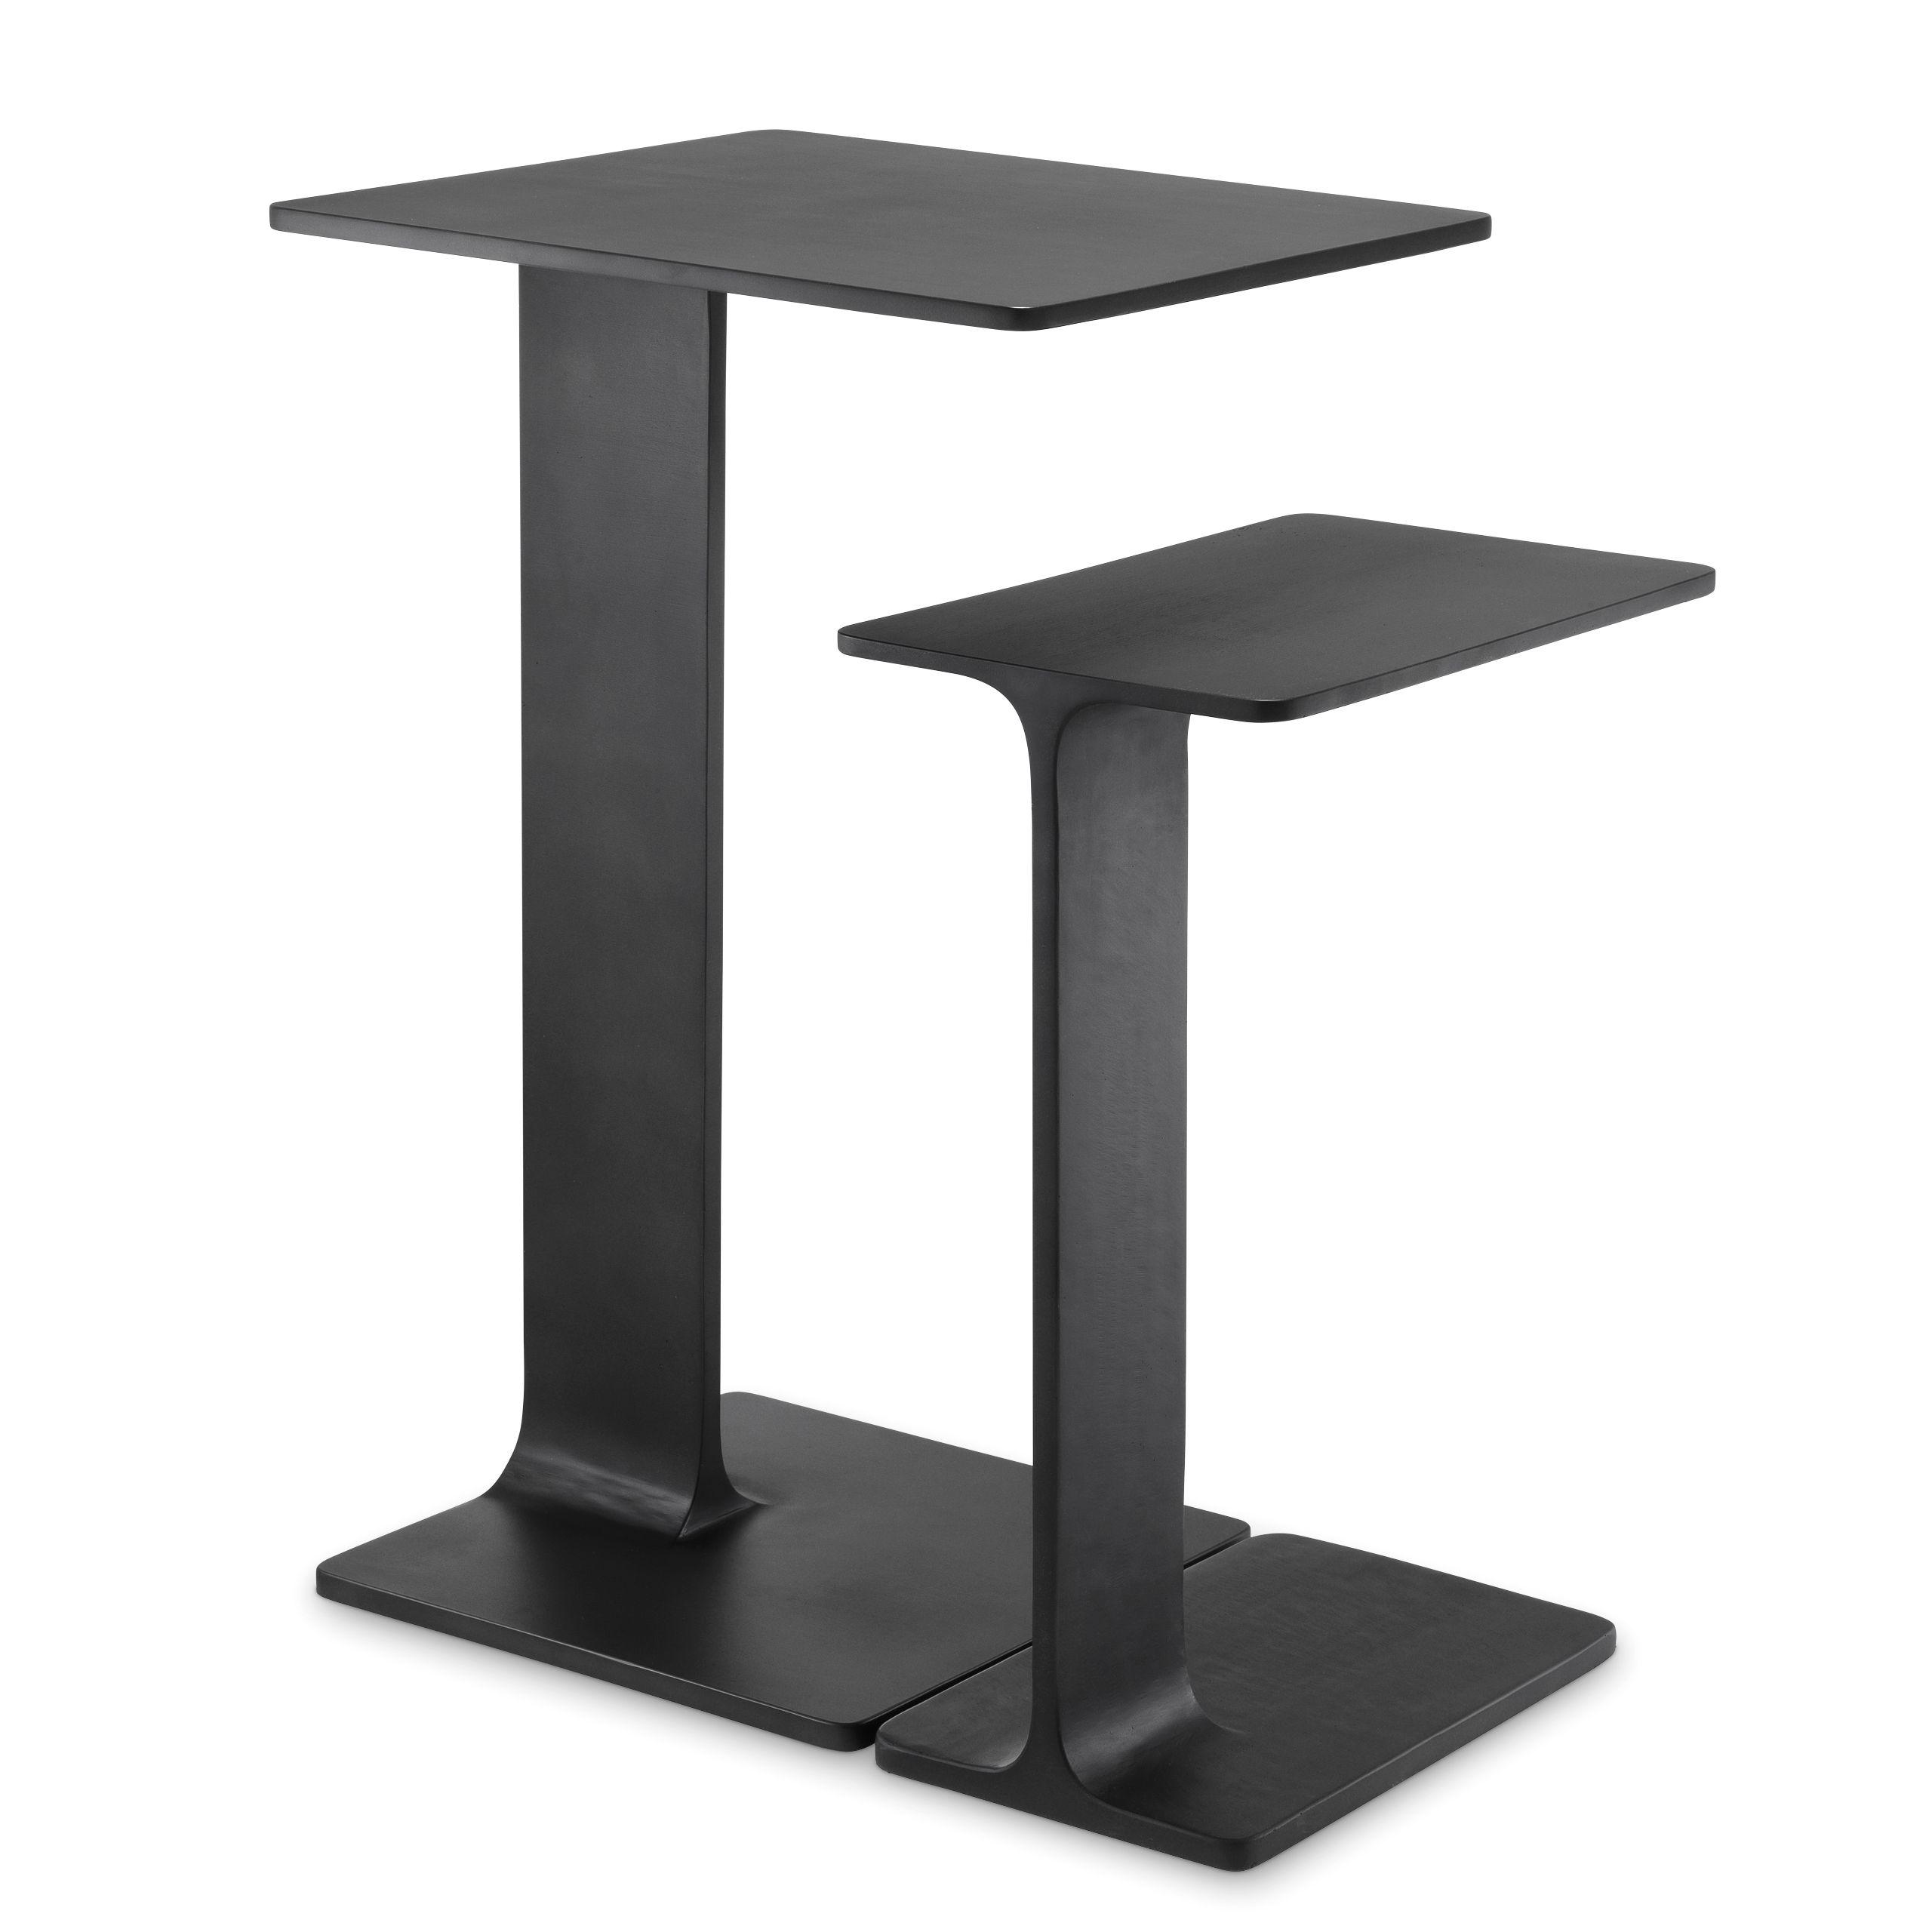 Купить Приставной столик Side Table Smart set of 2 в интернет-магазине roooms.ru